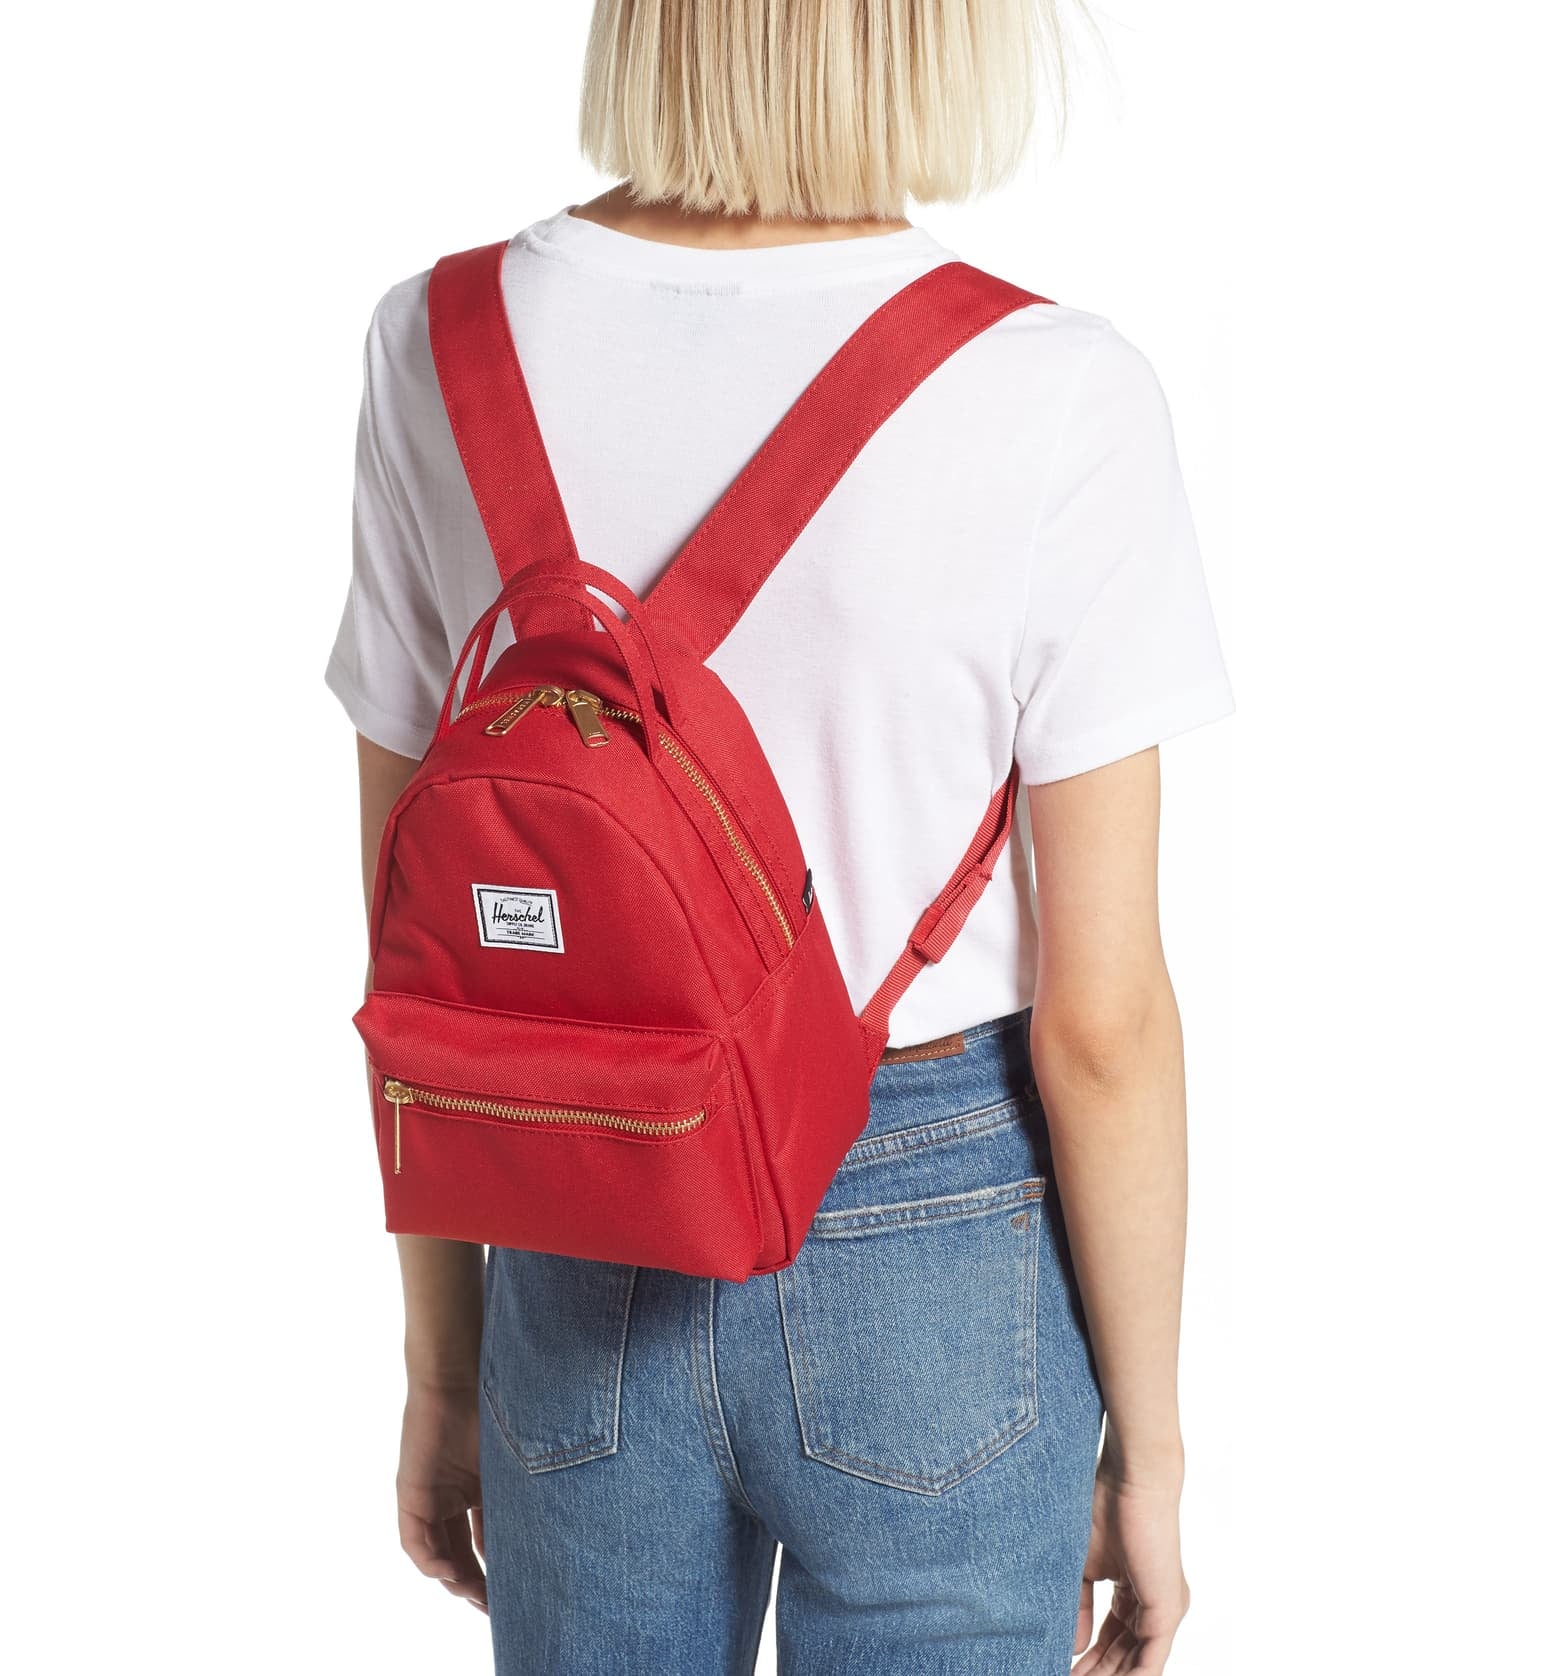 Vsco Girl Backpack Himawari School Waterproof Backpack 15 Inch ...